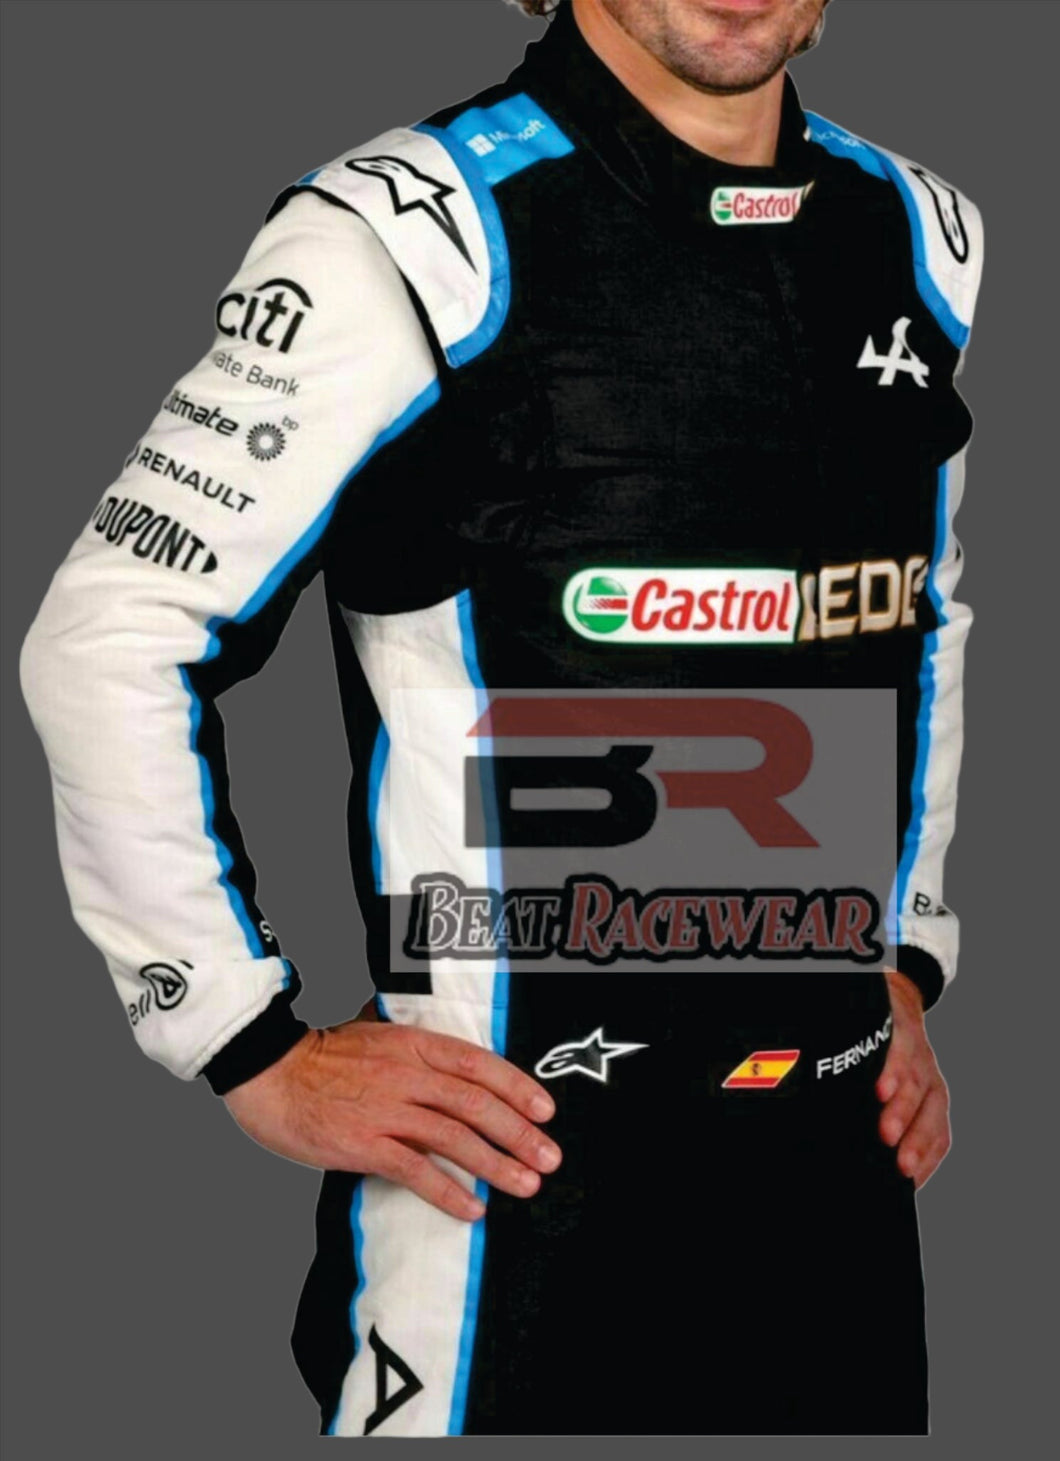 Fernando Alonso in Alpine race suit